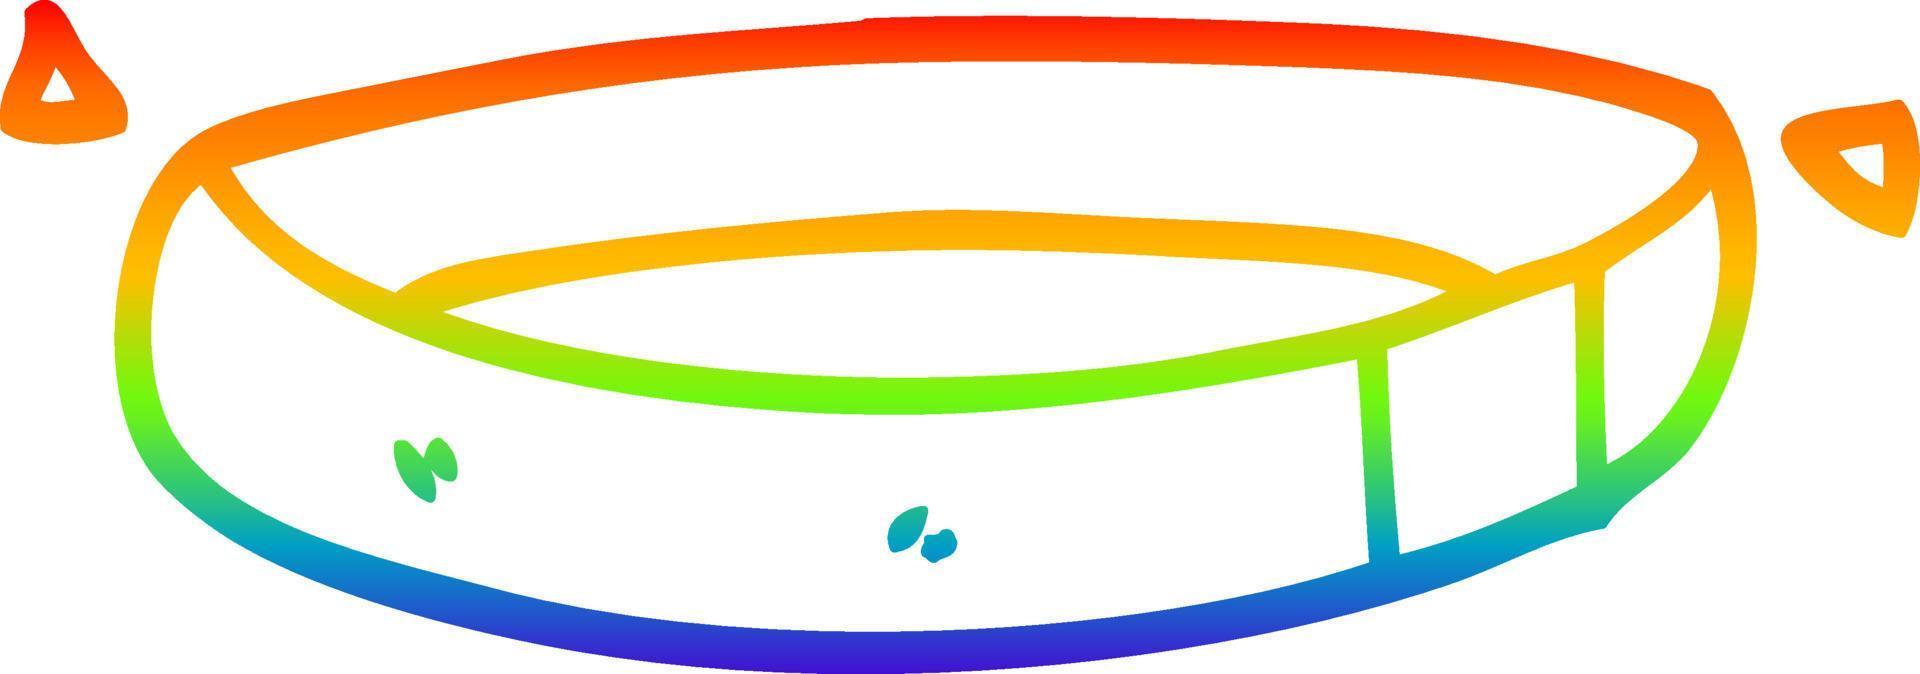 collar de perro de dibujos animados de dibujo de línea de gradiente de arco iris vector